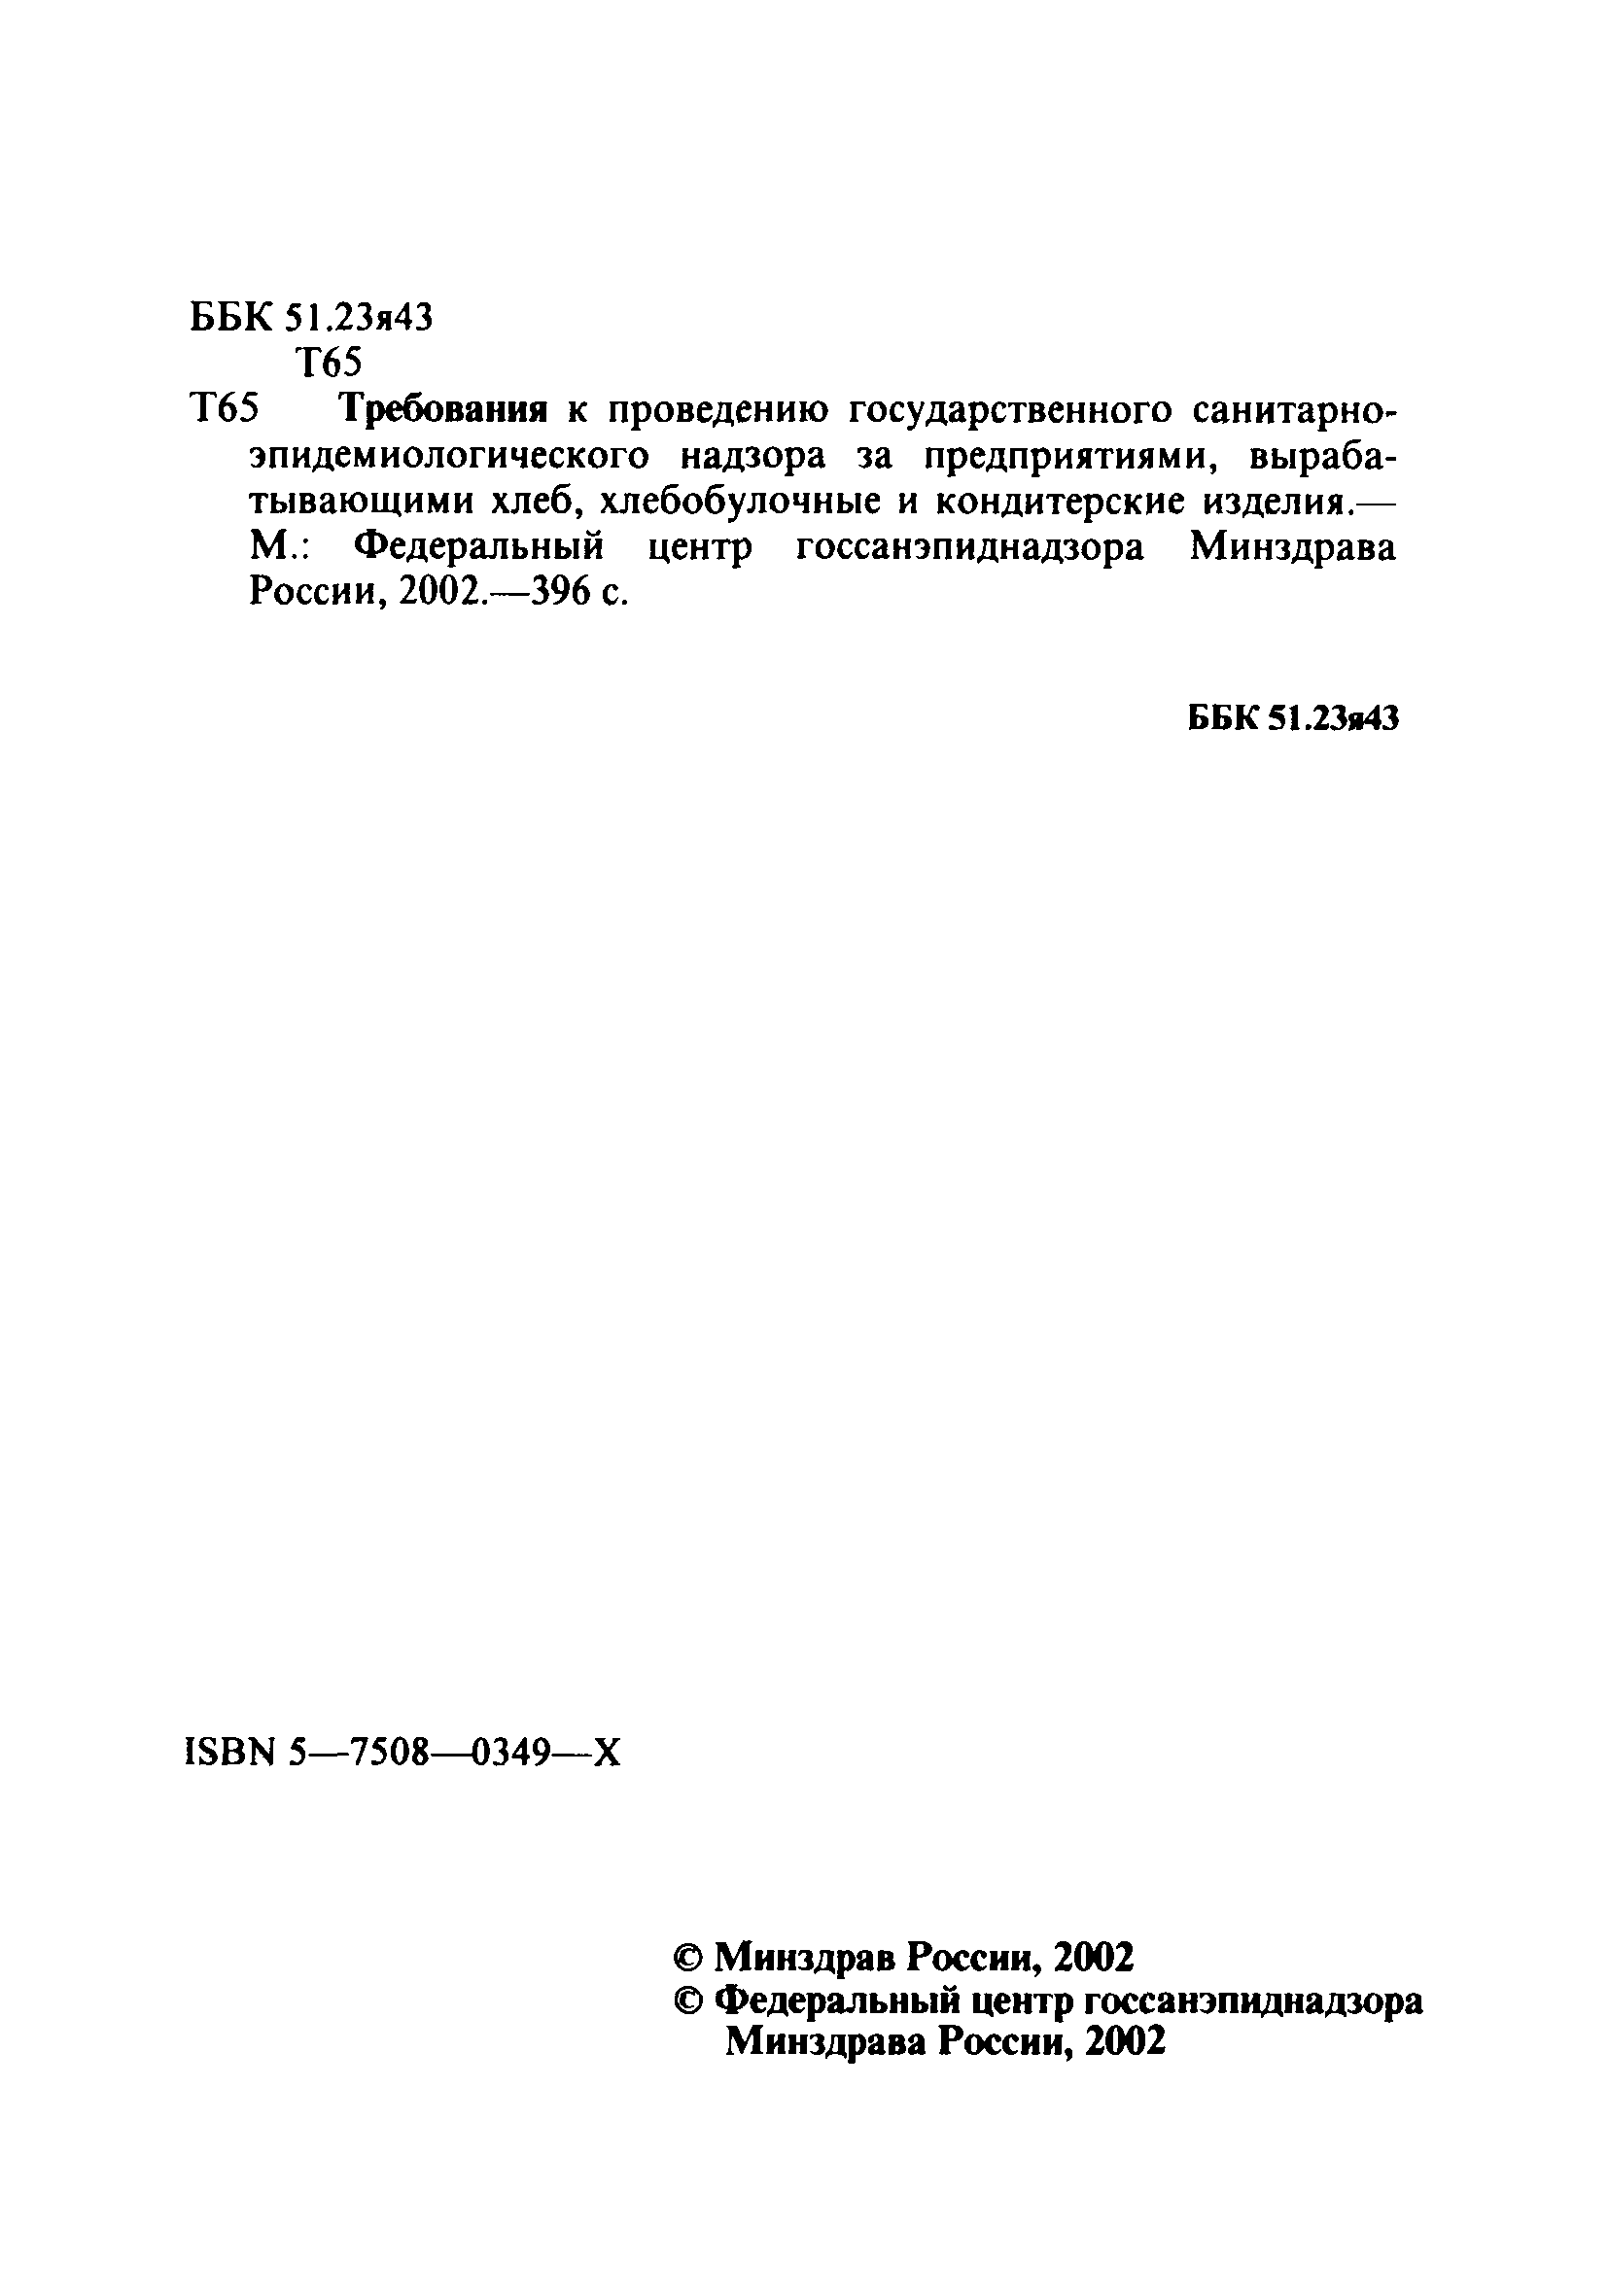 СП 1.1.1058-01